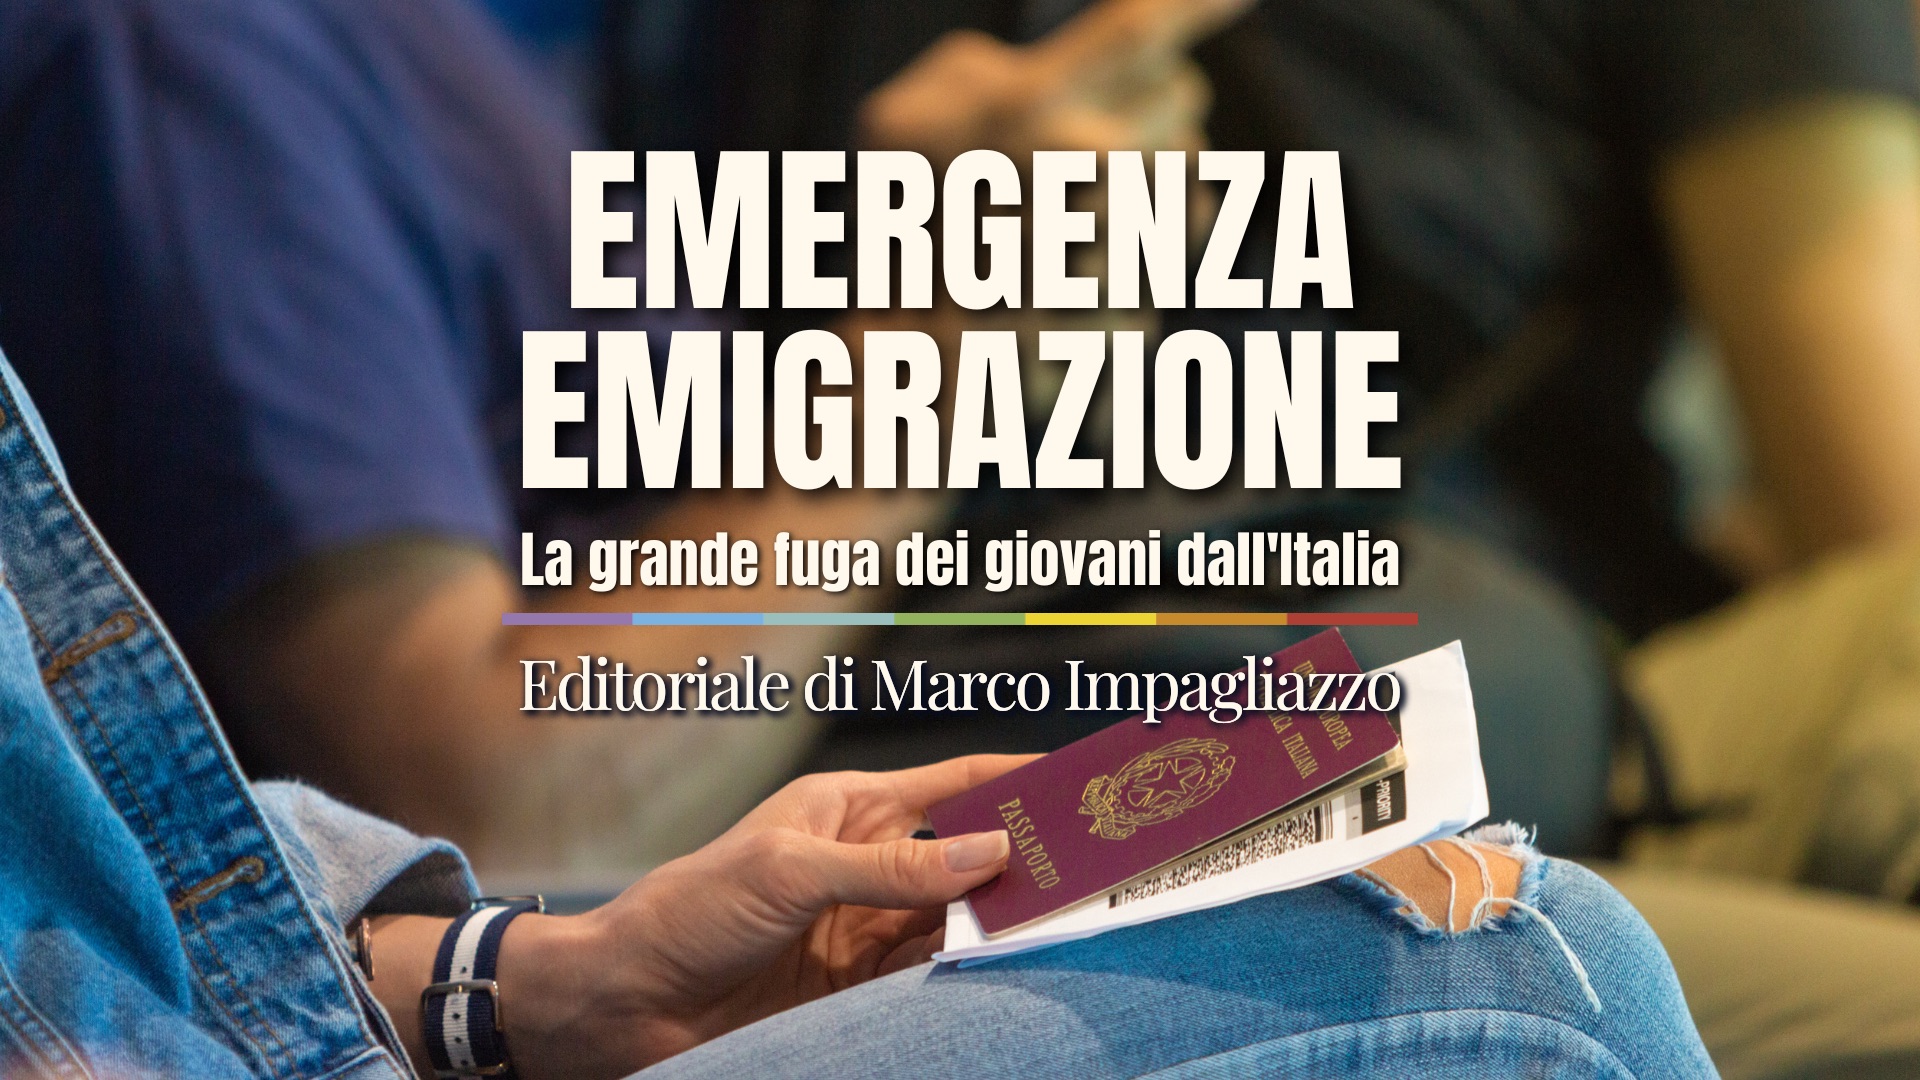 Emergenza emigrazione: la grande fuga dei giovani dall'Italia